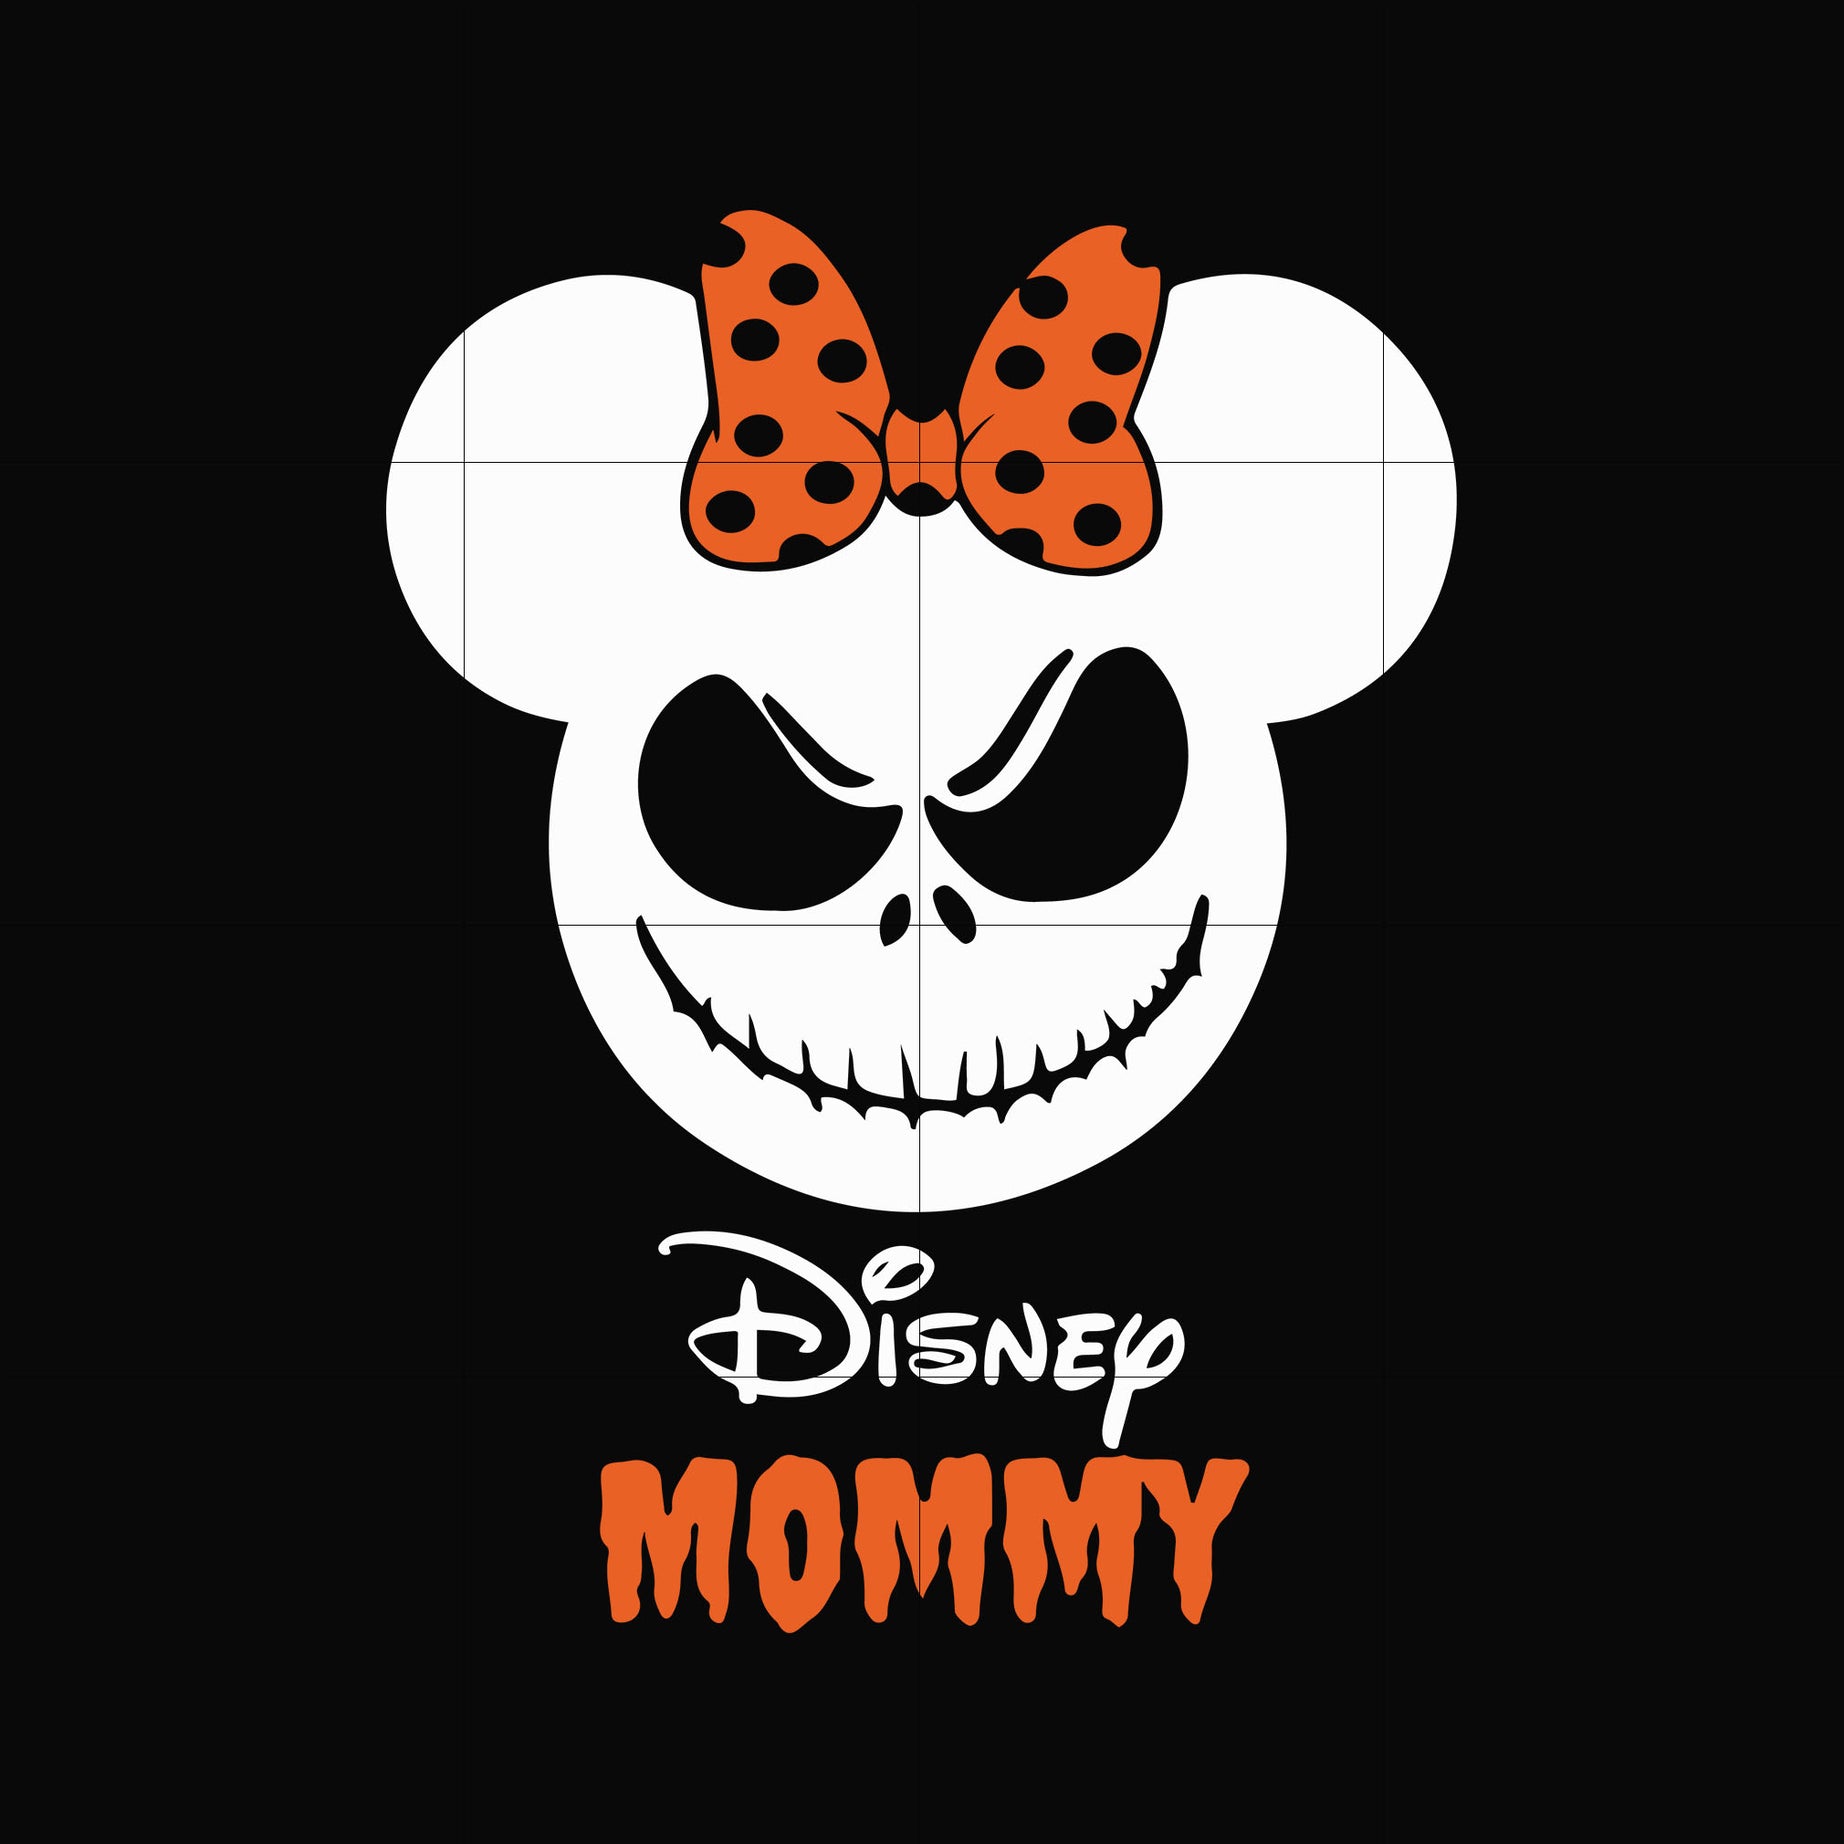 Disney mommy svg, png, dxf, eps digital file HLW0132